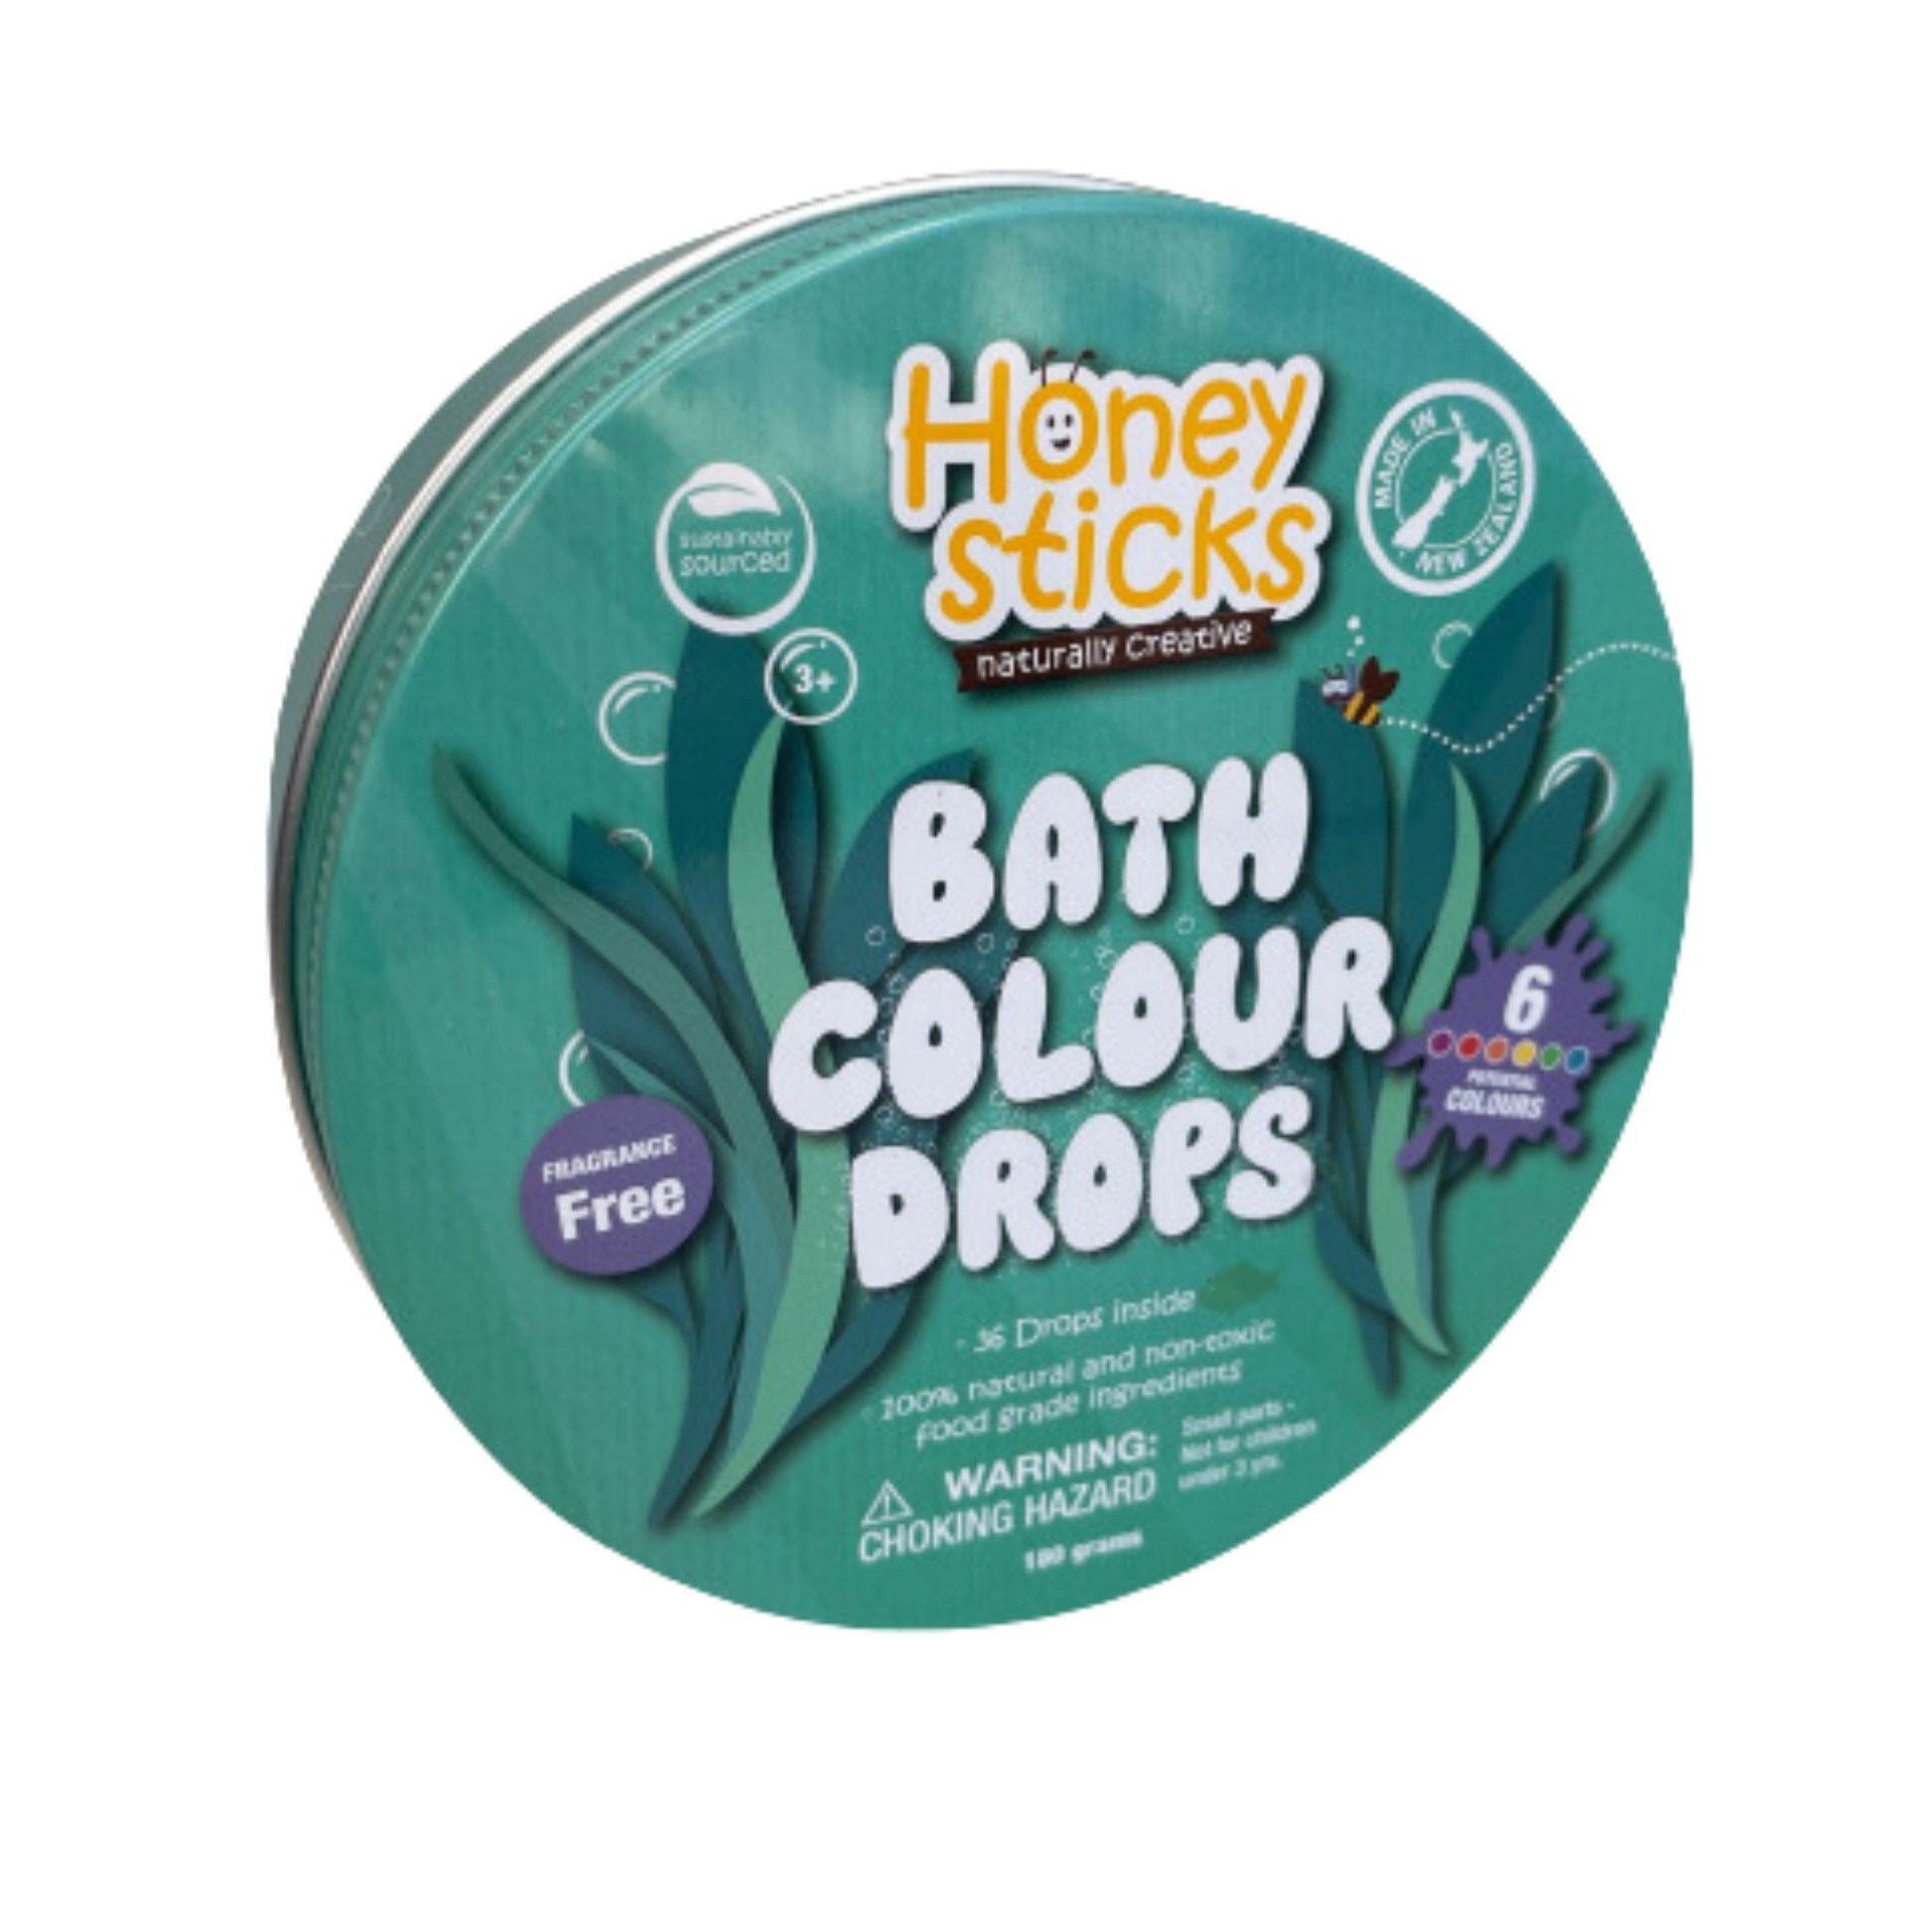 Honeysticks Bath Drops, Bath Colour Drops